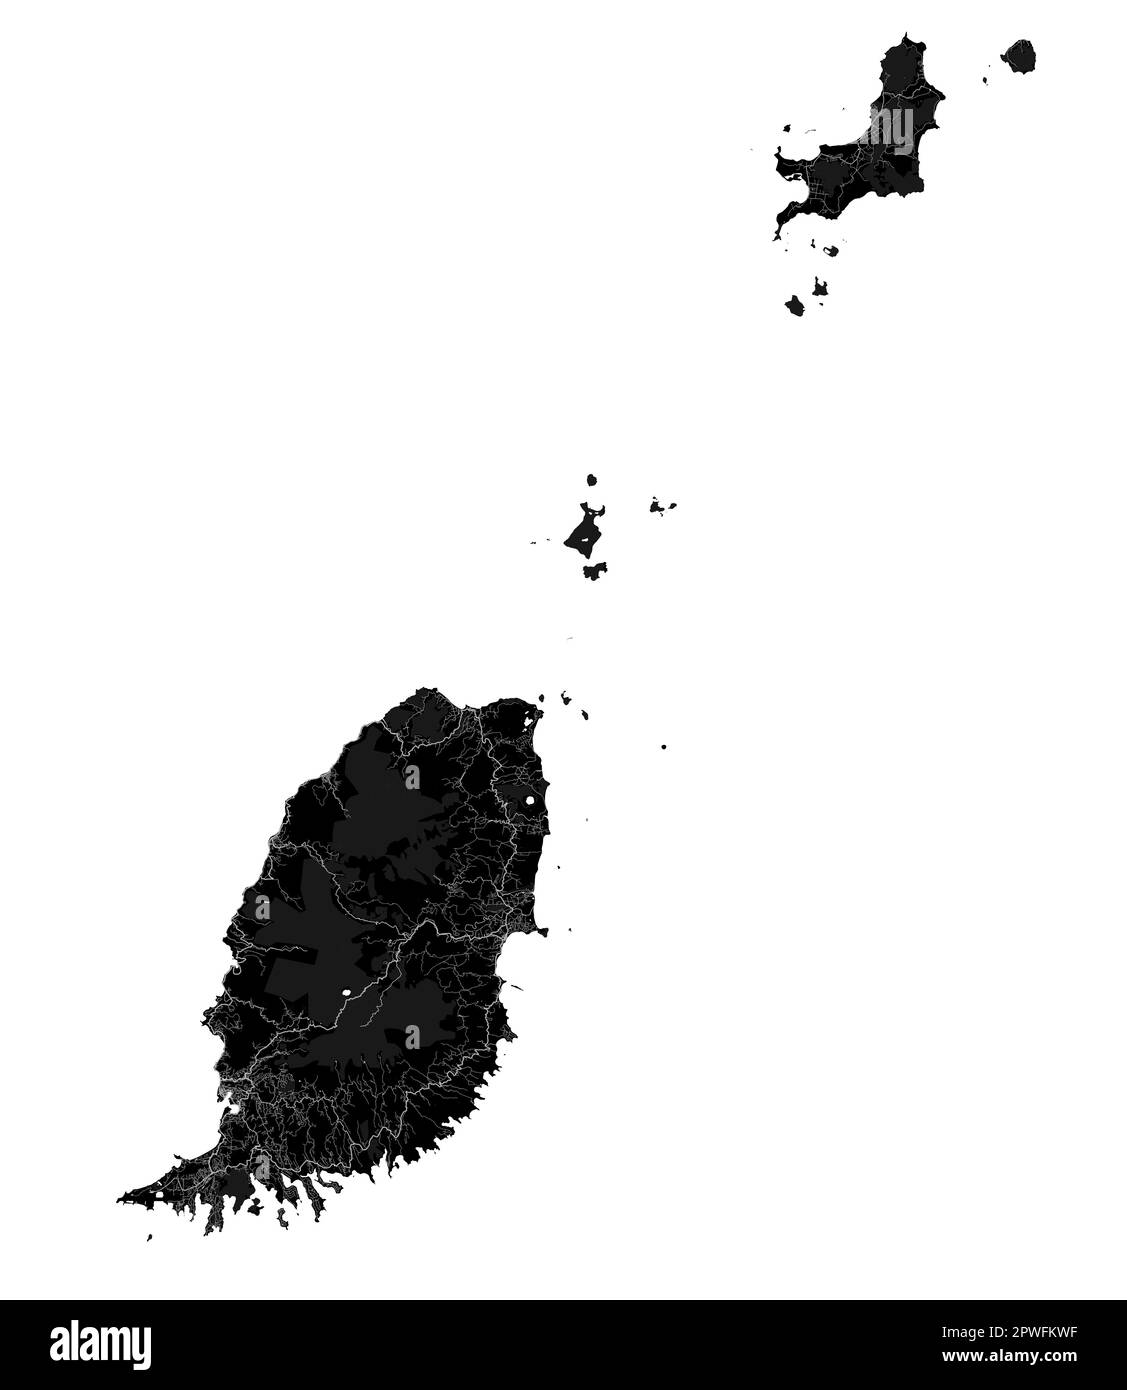 Karte von schwarzem Grenada, karibisches Inselland. Detaillierte Karte mit Verwaltungsgrenze, Küste, Meer und Wäldern, Städten und Straßen. Stock Vektor